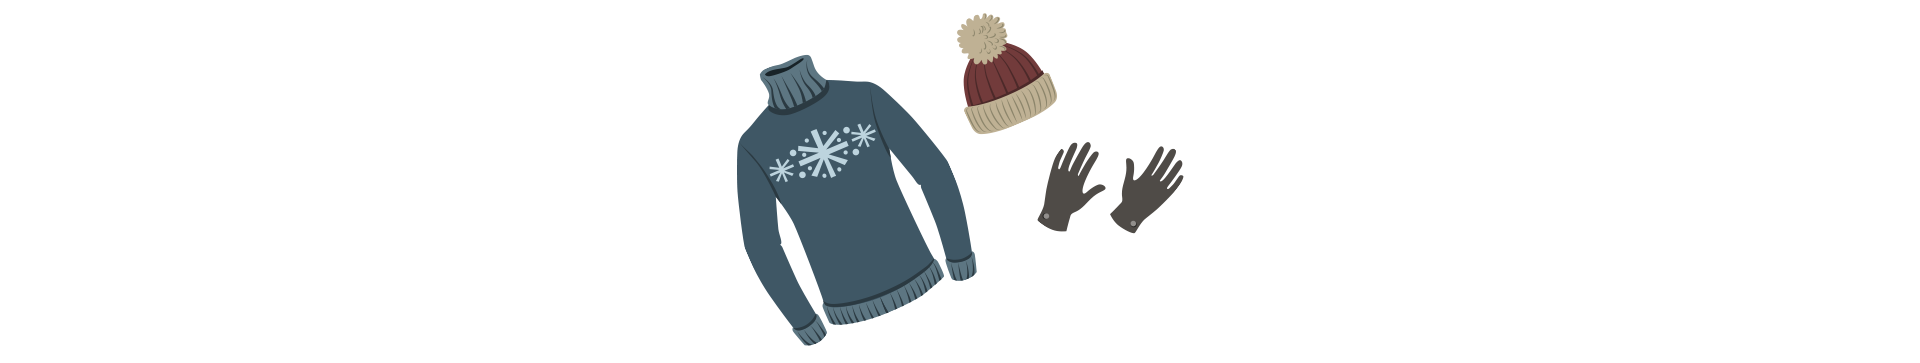 Glove woollen clothes